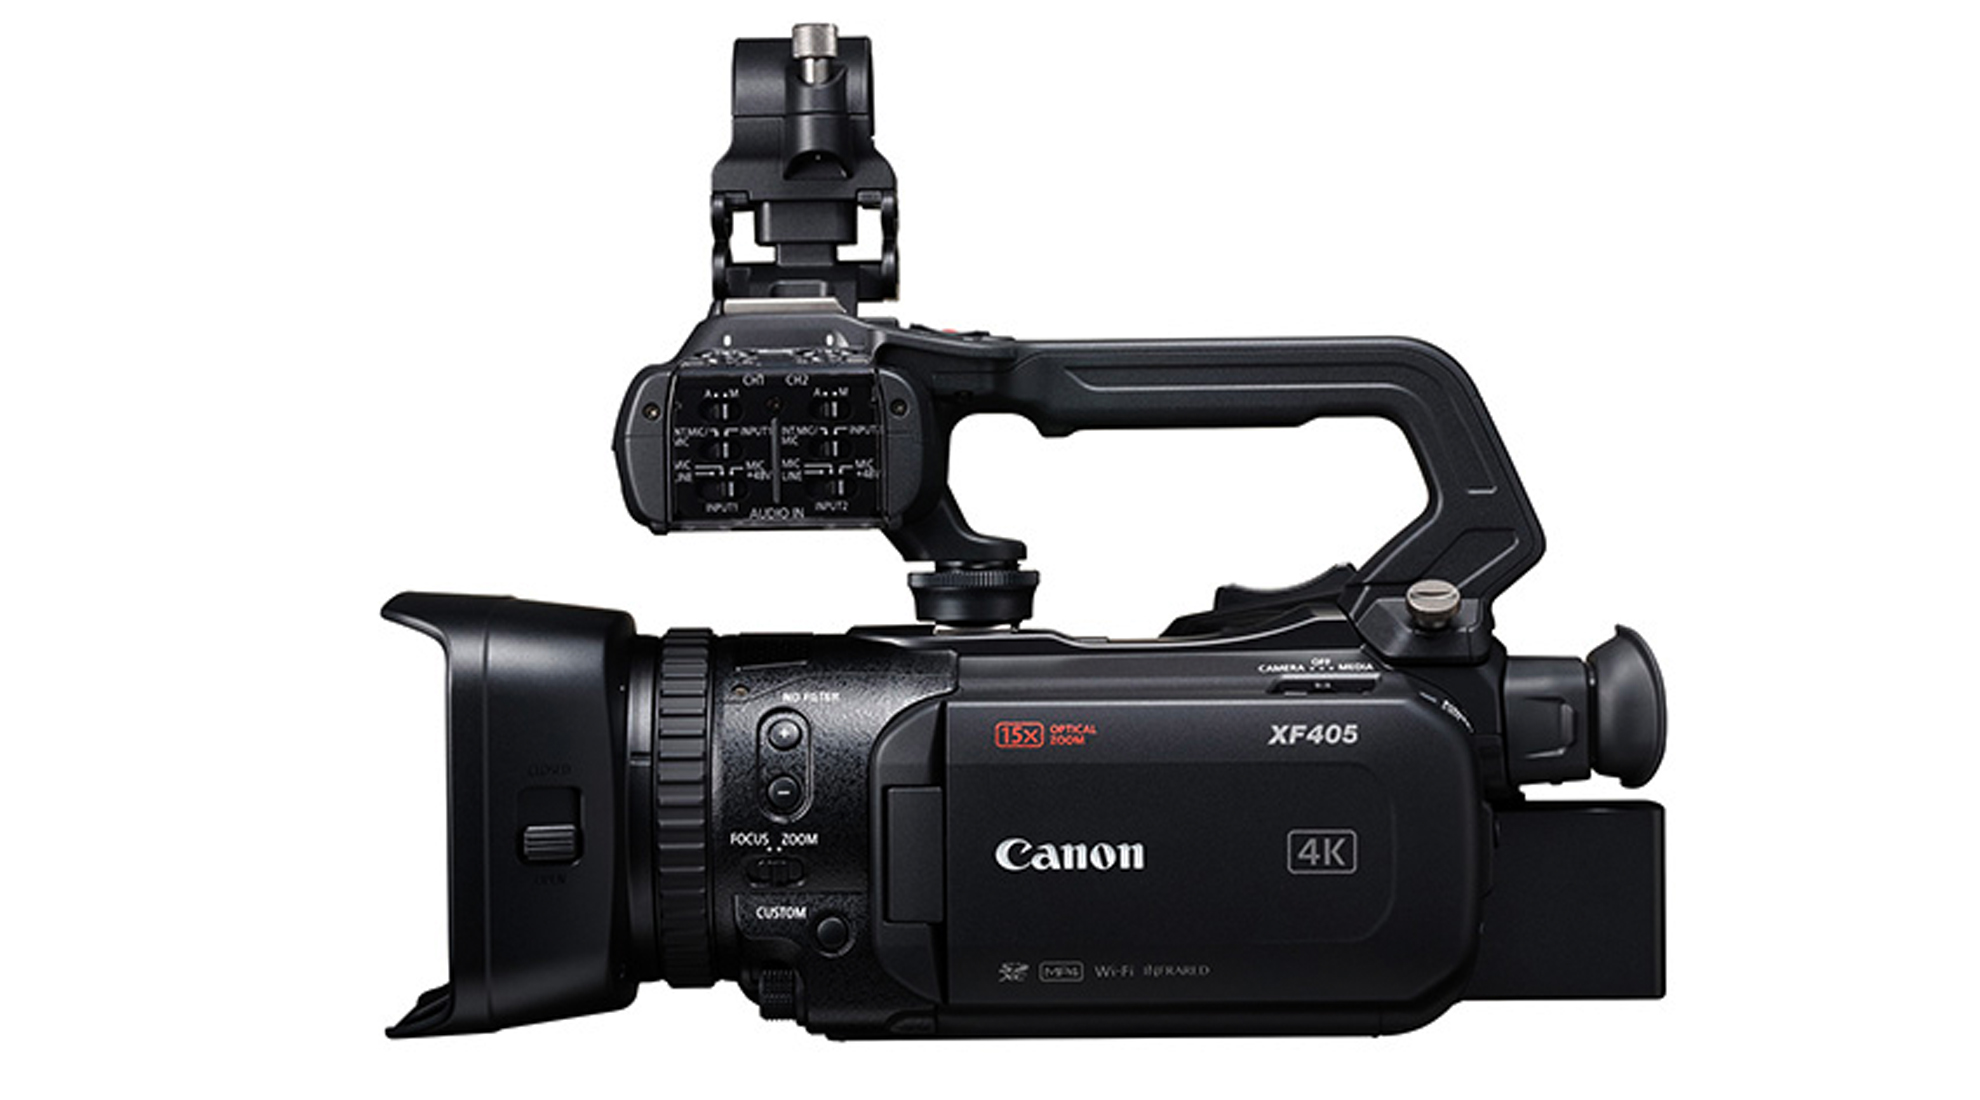 Canon XF405 digital video camera